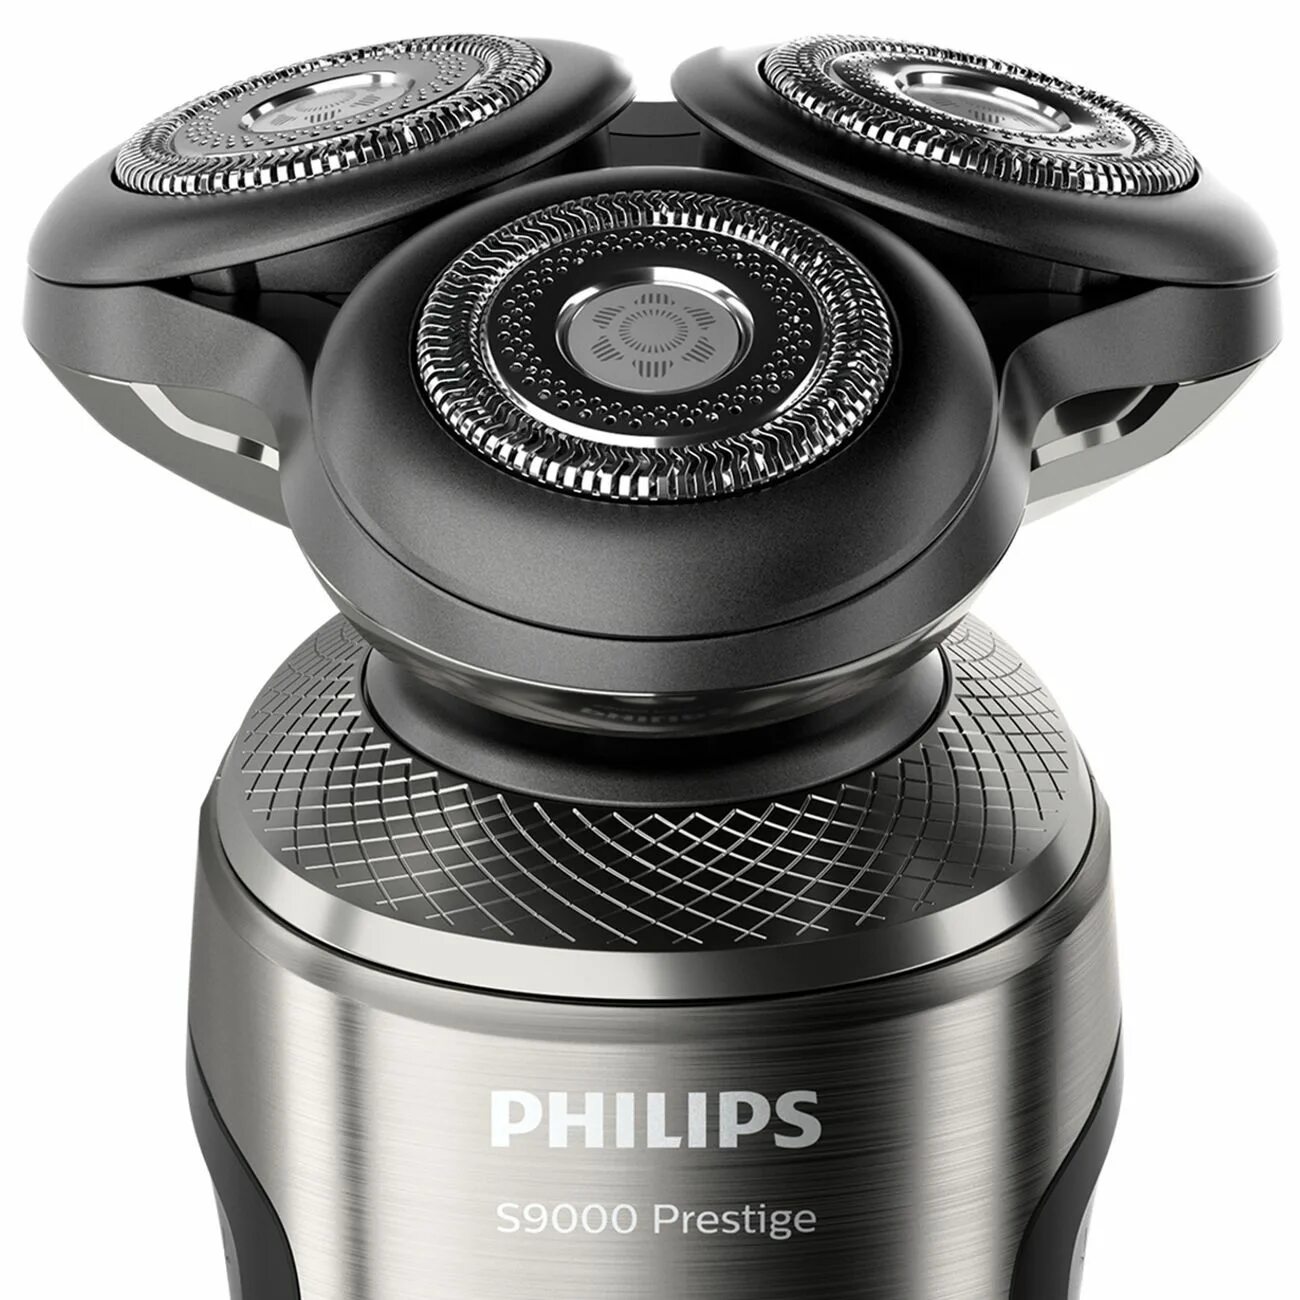 Филипс 9000 купить. Philips s9000 Prestige. Philips Norelco Shaver 9000 Prestige. Бритвенный блок Philips sh70/70. Philips Series 9000 Prestige.